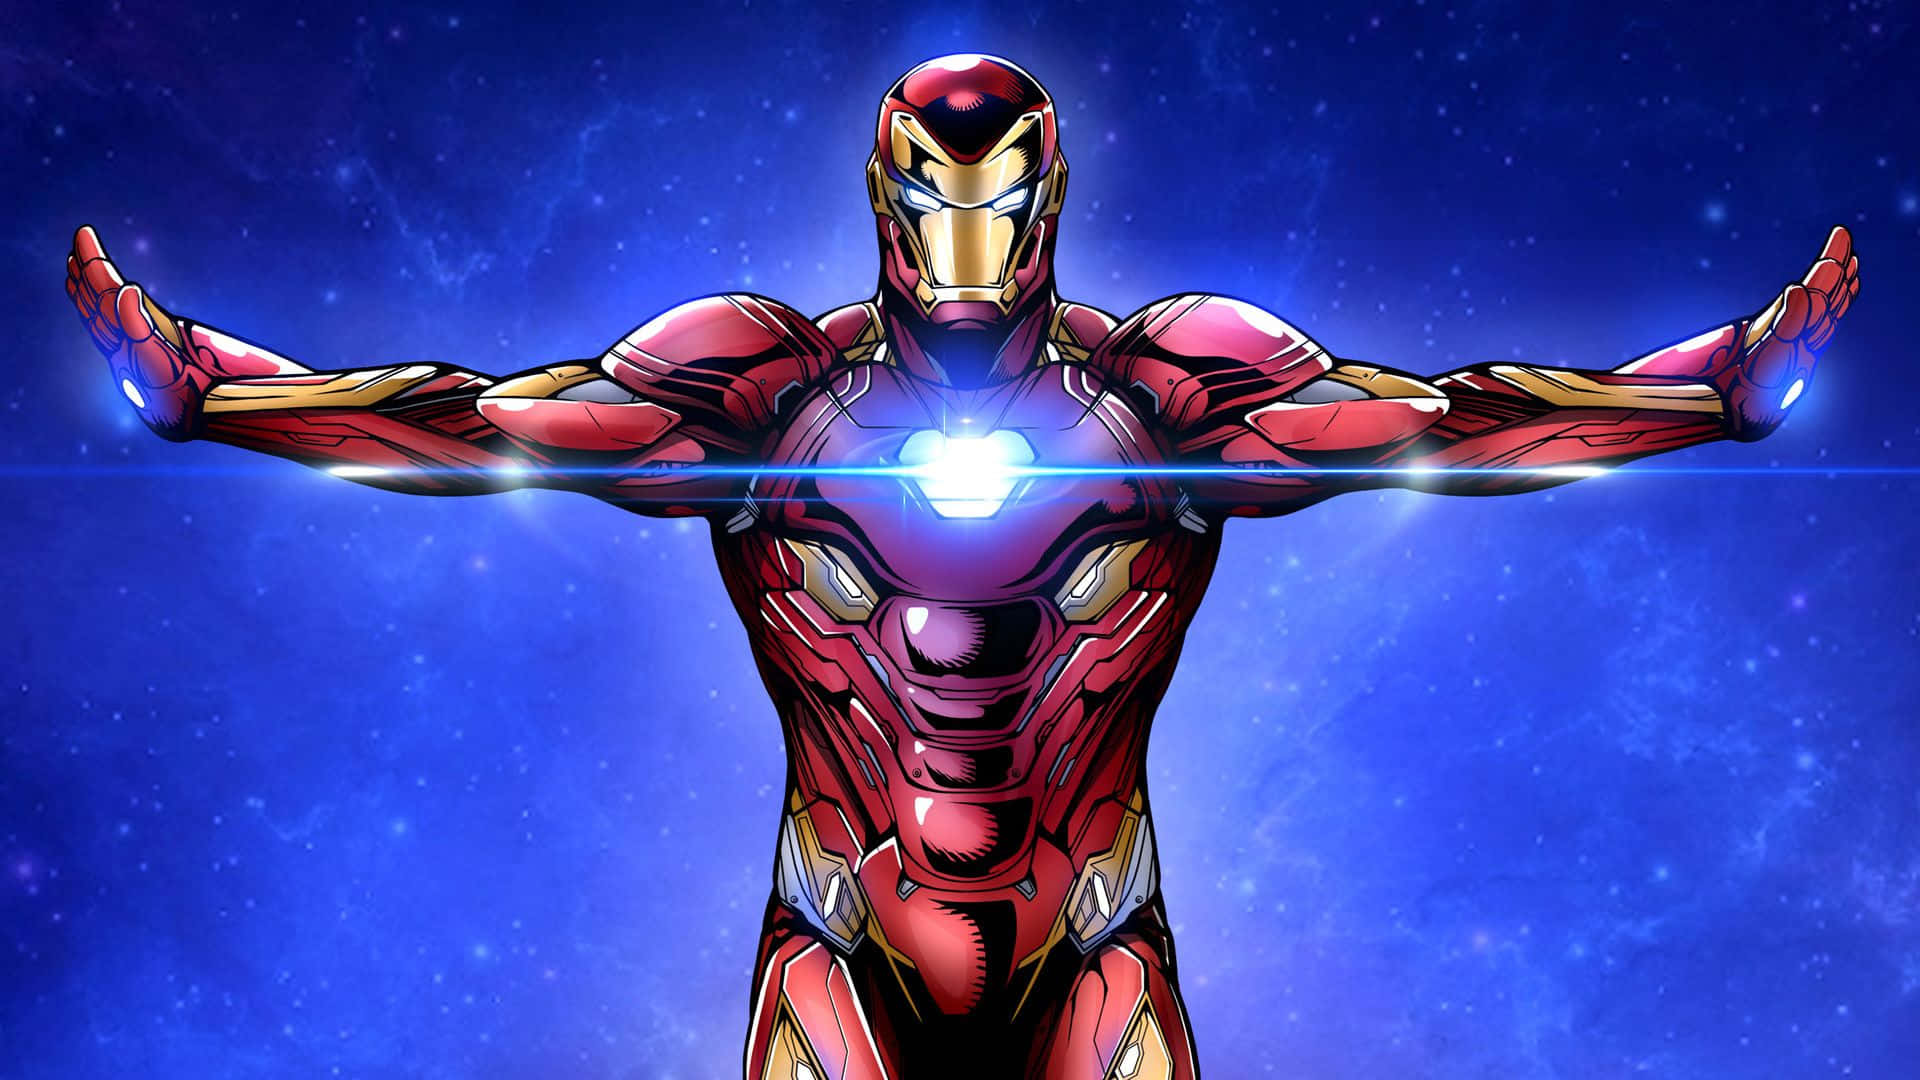 Download Avengers Iron Man Cartoon Art Wallpaper 